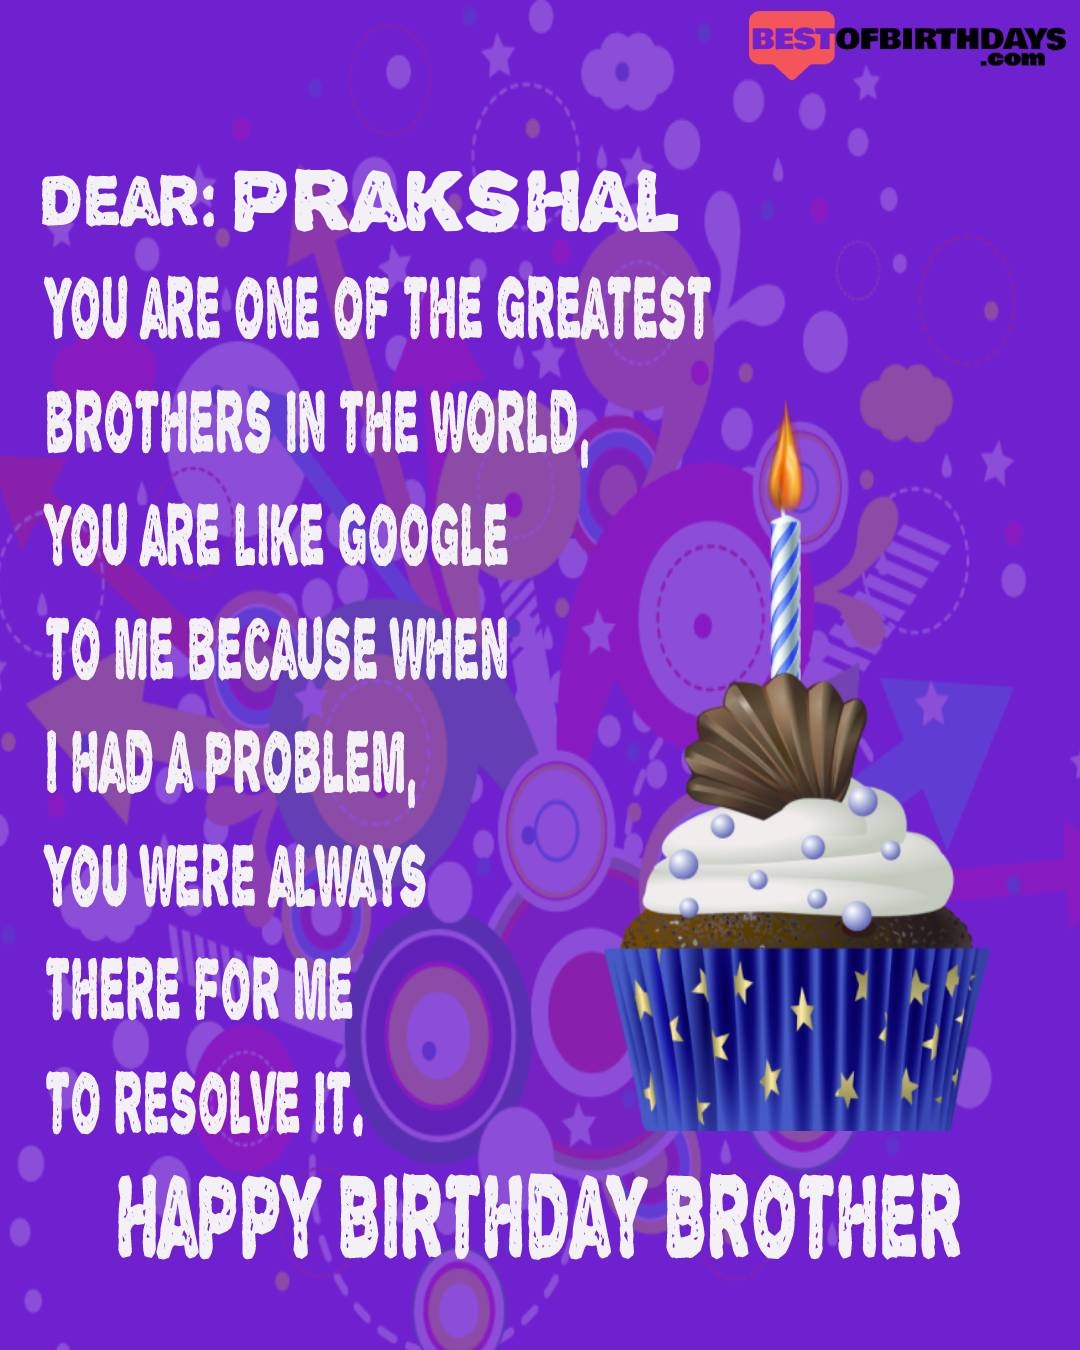 Happy birthday prakshal bhai brother bro